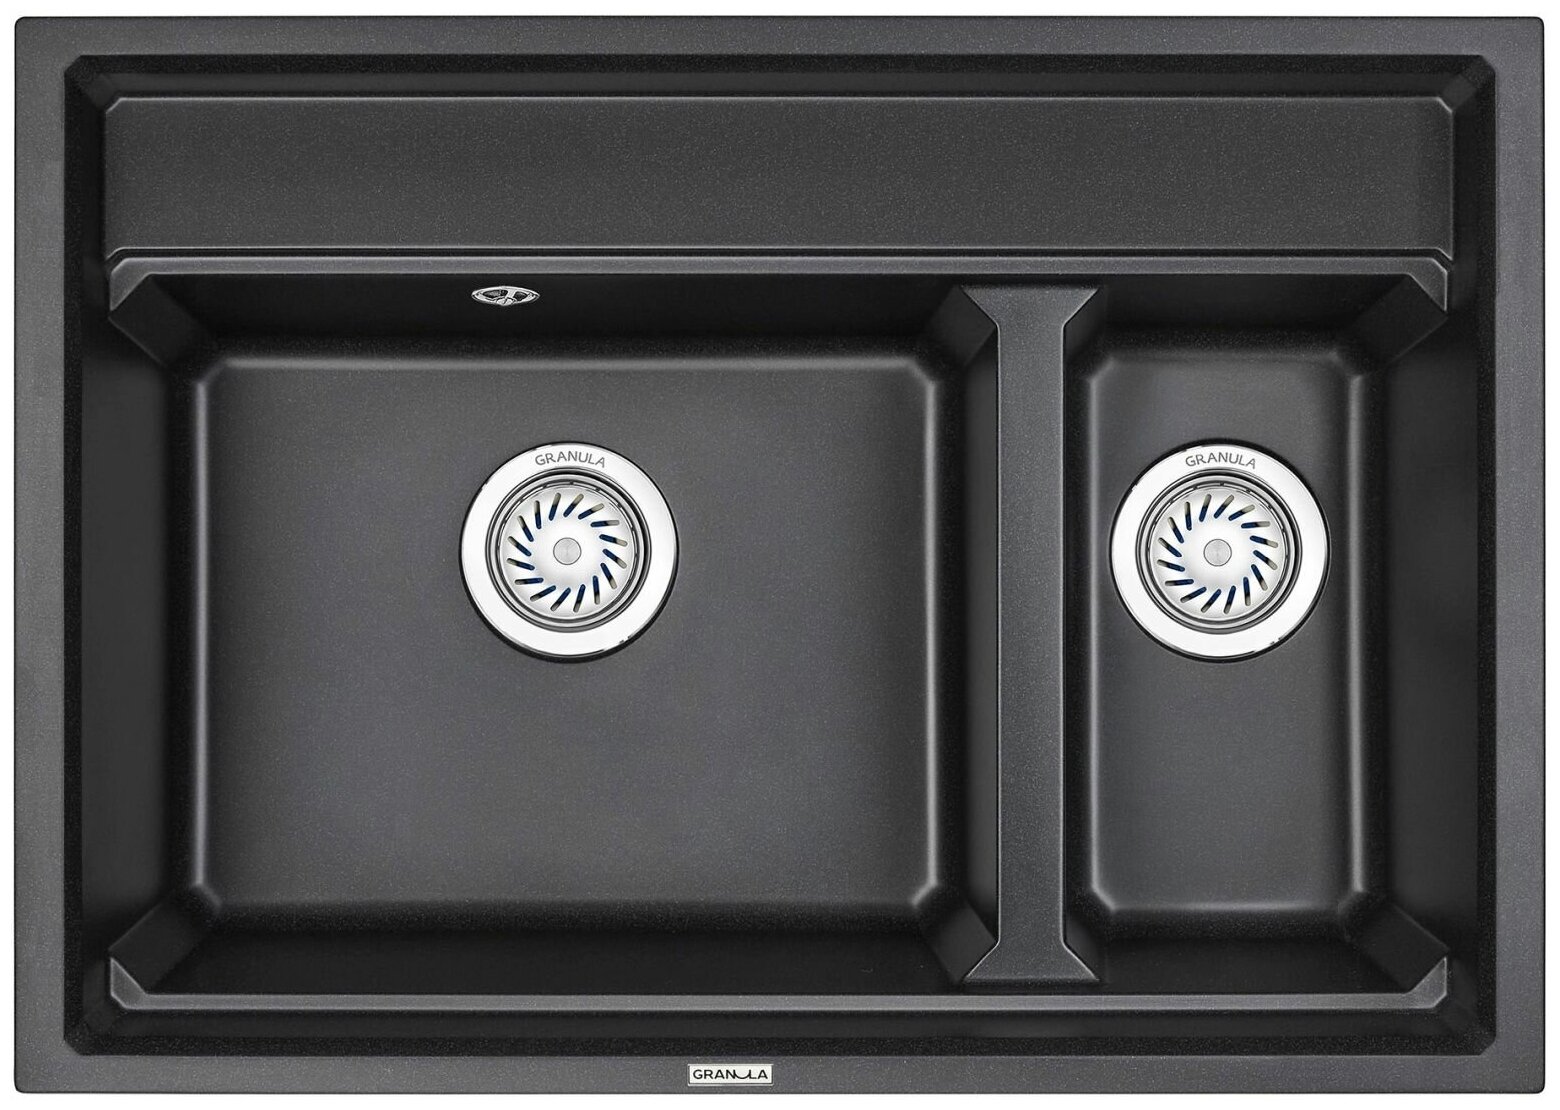 Кухонная мойка кварцевая Granula Kitchen Space с ролл-матом и дозатором KS-7302 прямоугольная двухсекционная, китчен спейс, чаша 445x380, 190x380, цвет чёрный (7302bl)